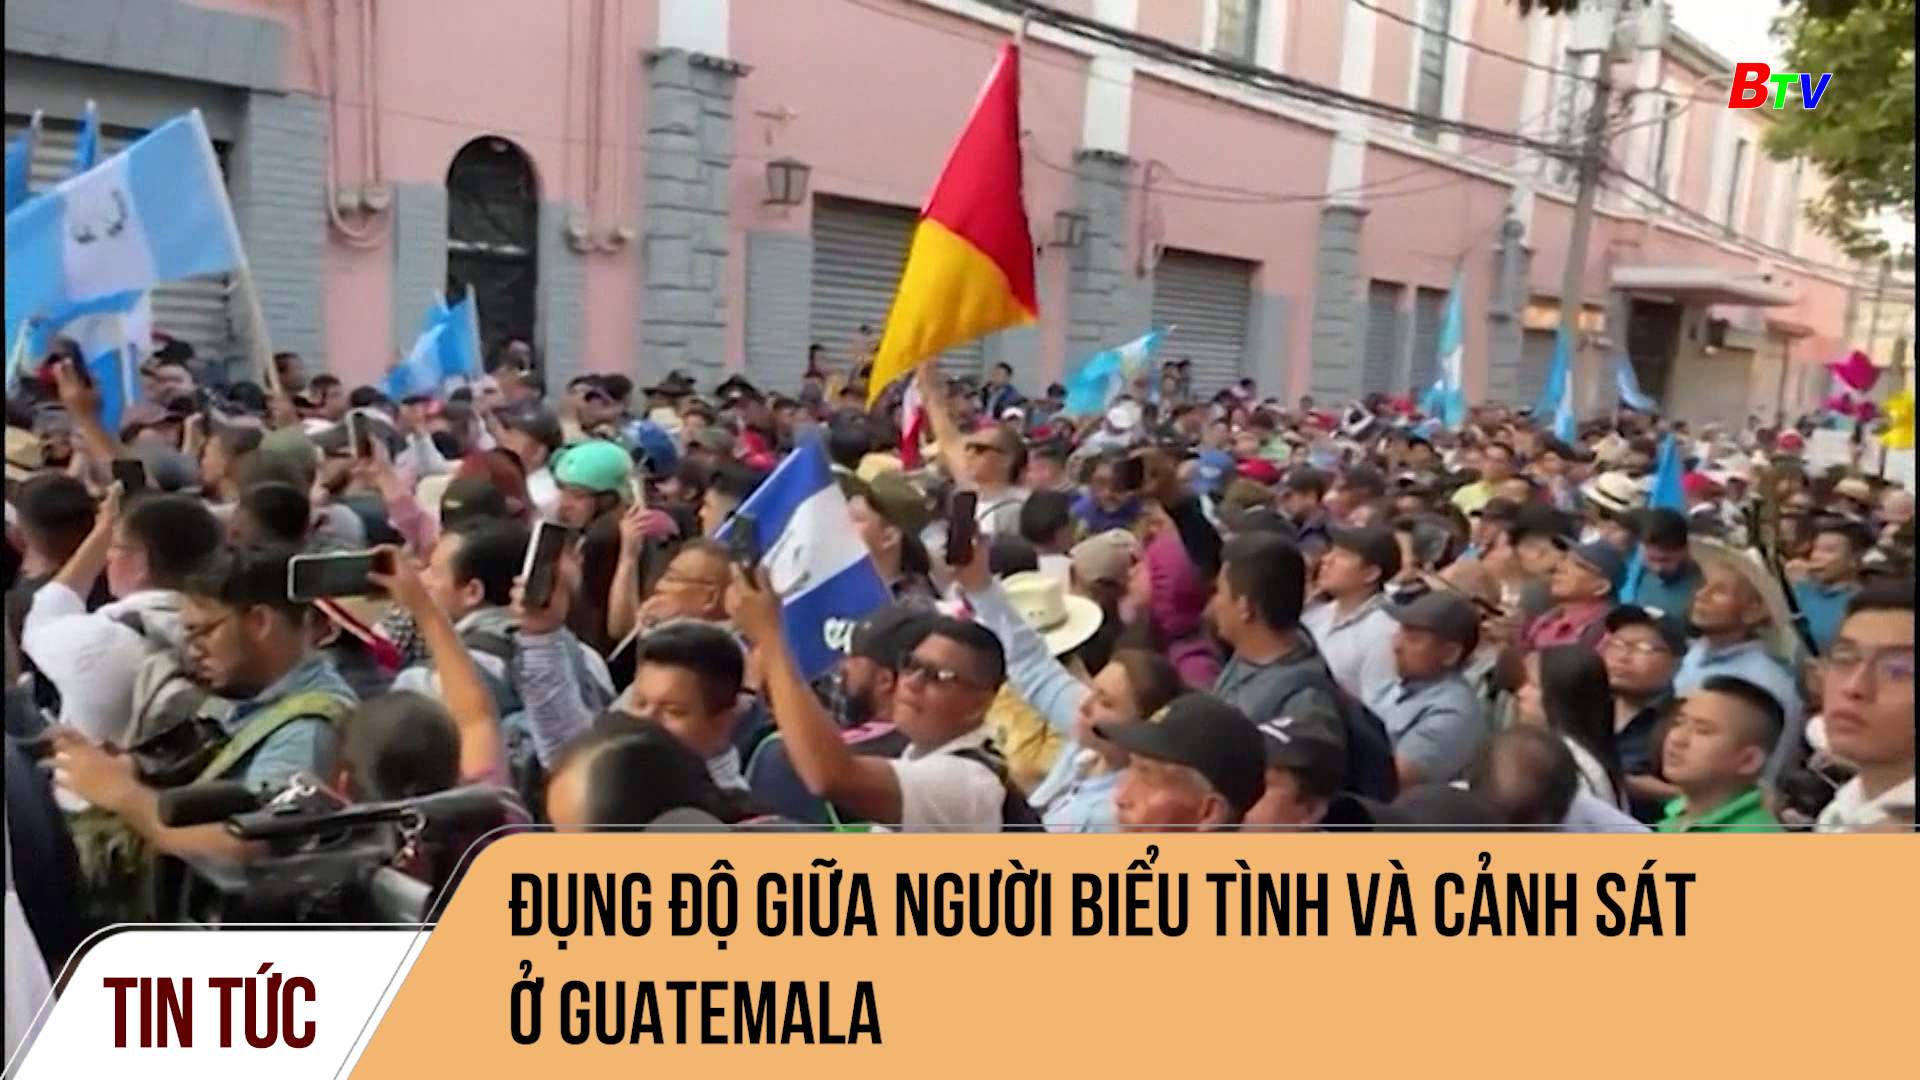 Đụng độ giữa người biểu tình và cảnh sát ở Guatemala